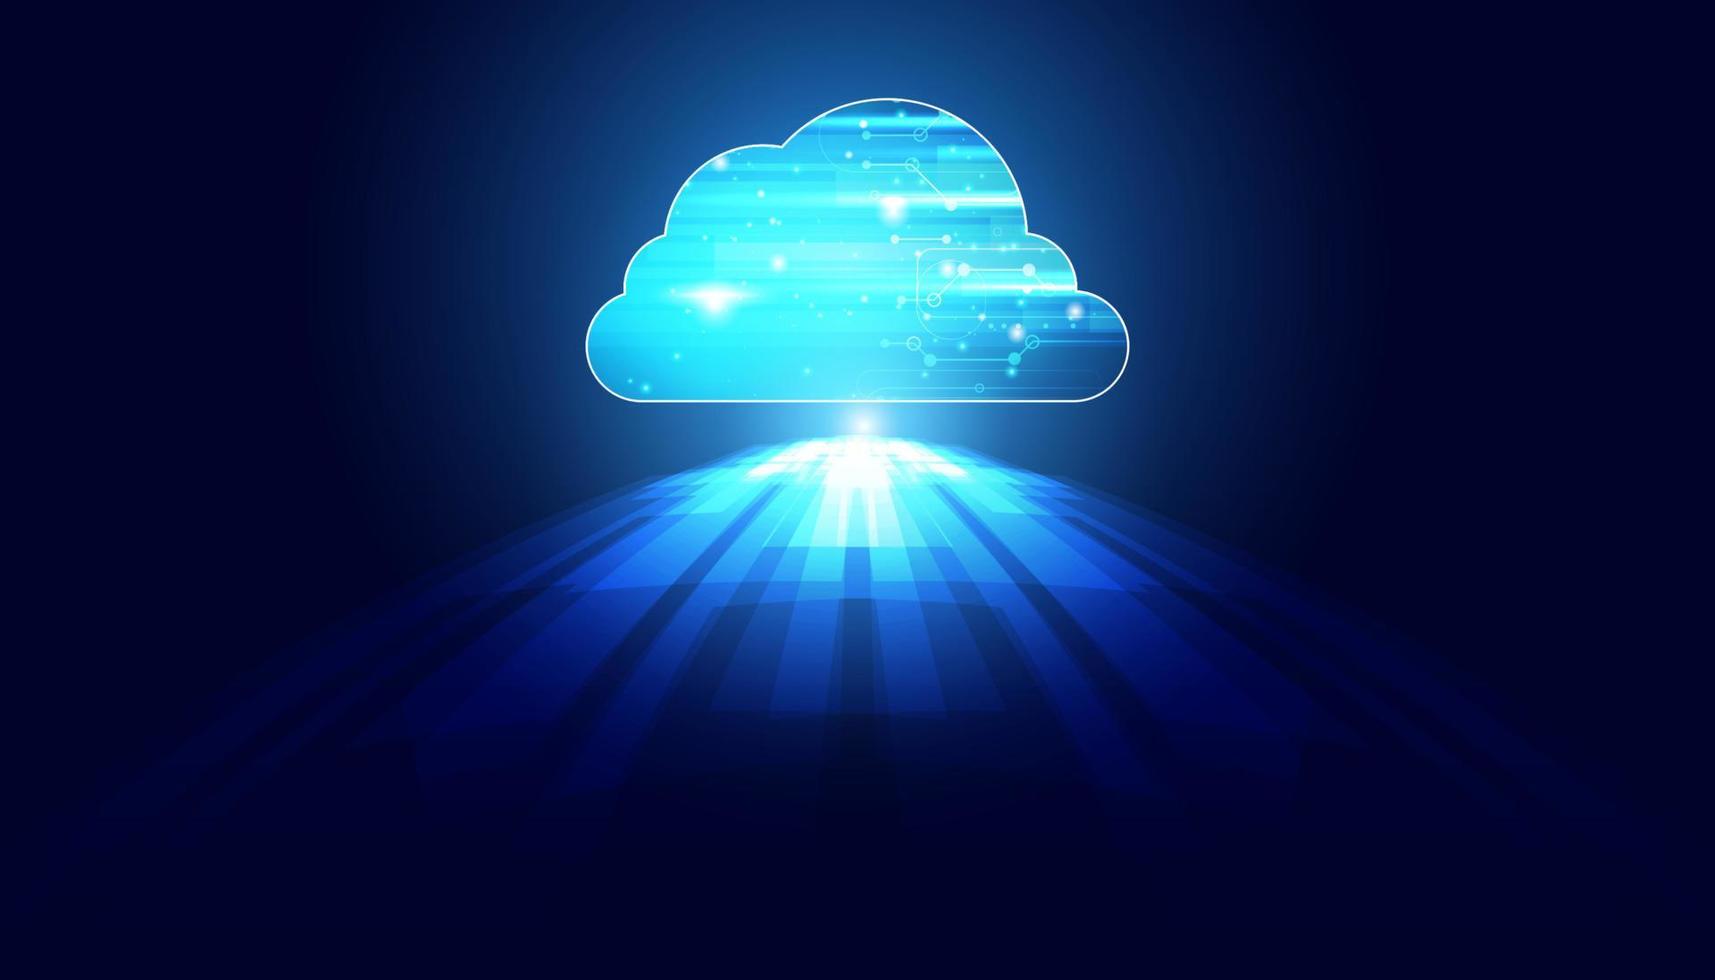 abstrakte cloud-technologie mit großer daten- und informationskonzeptverbindung durch das sammeln von daten in der cloud mit großen datenspeichersystemen auf hi-tech-hintergrund. vektor